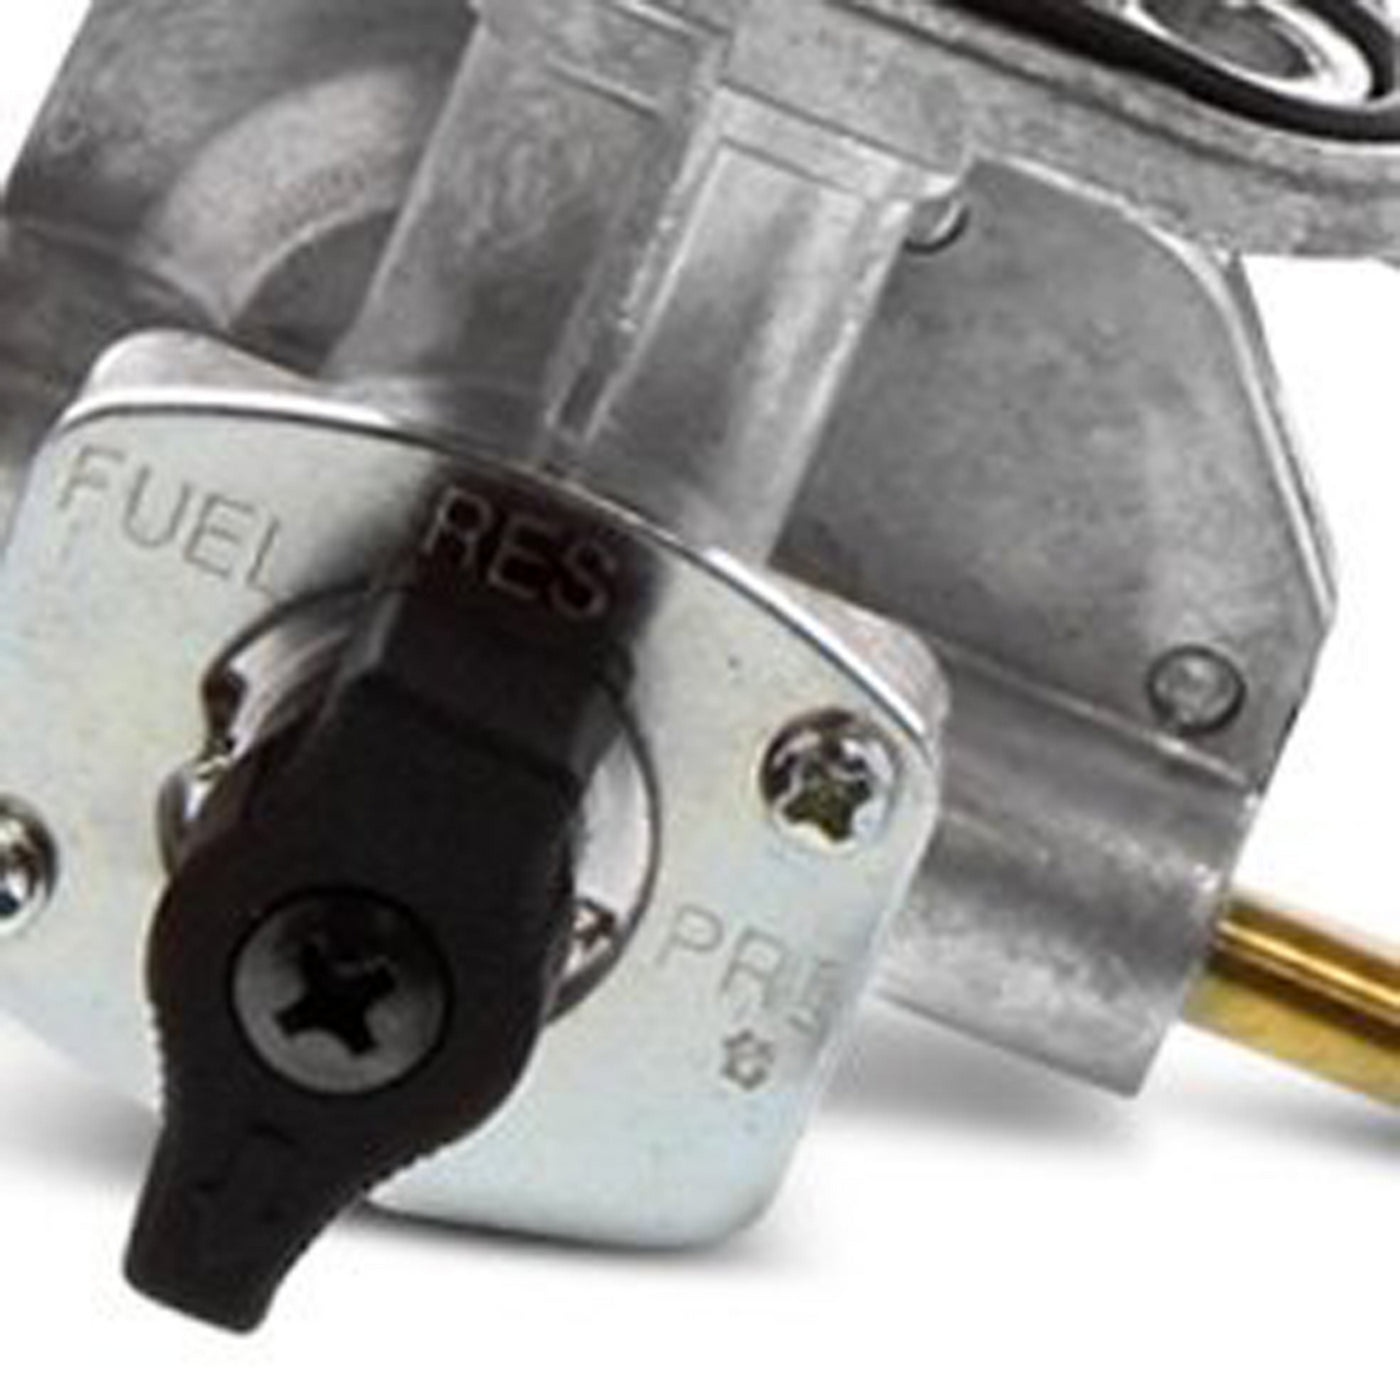 Fuel Star FS101-0113 Fuel Valve Kit #FS101-0113